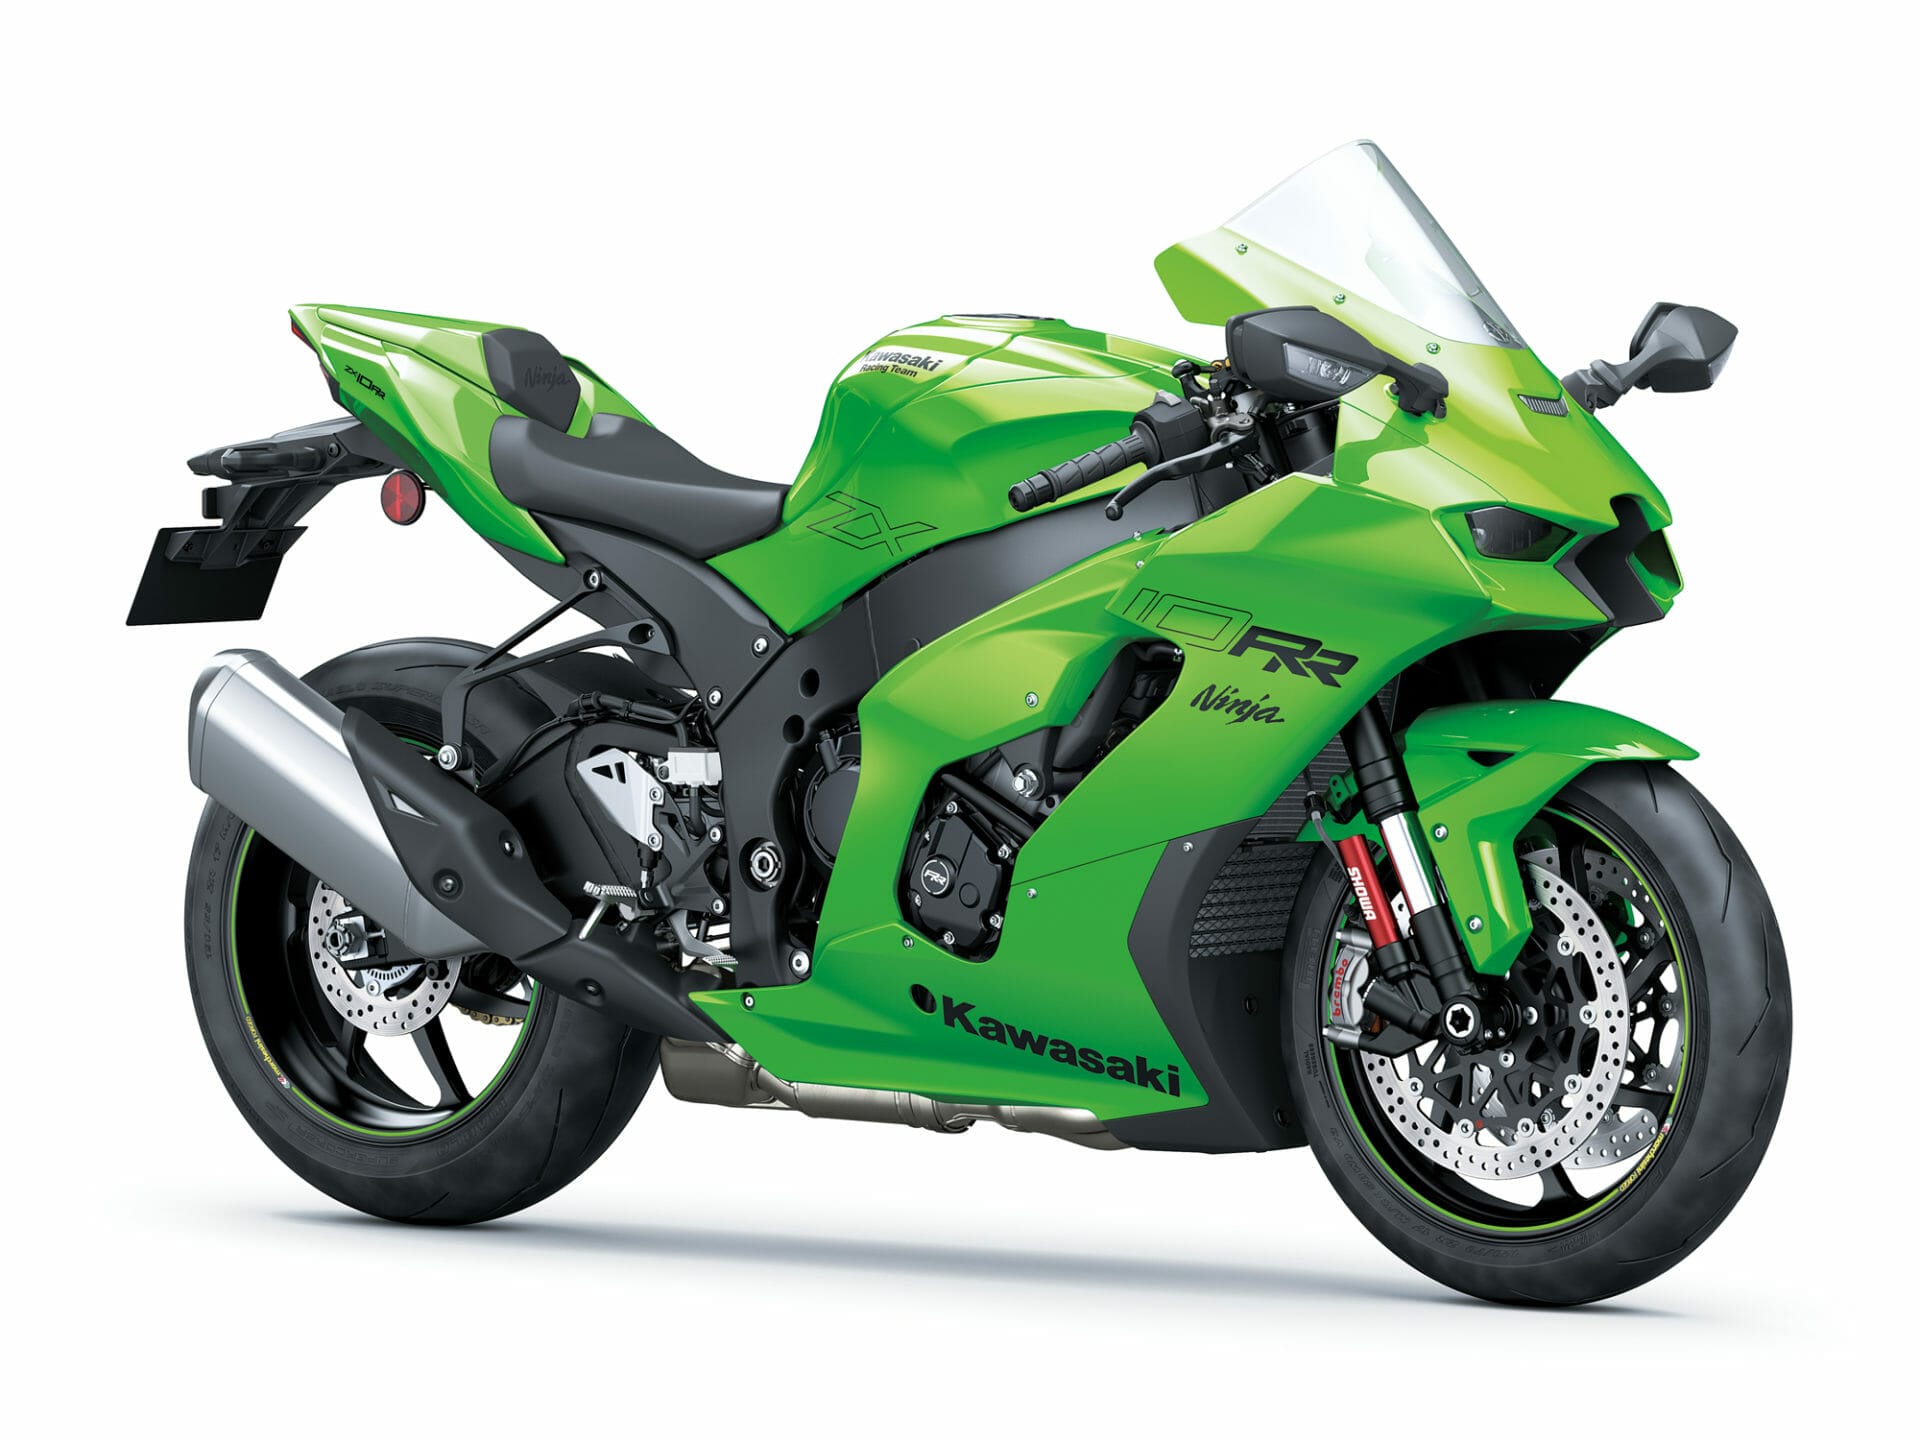 Kawasaki recalls several models
- also in the MOTORCYCLES.NEWS APP